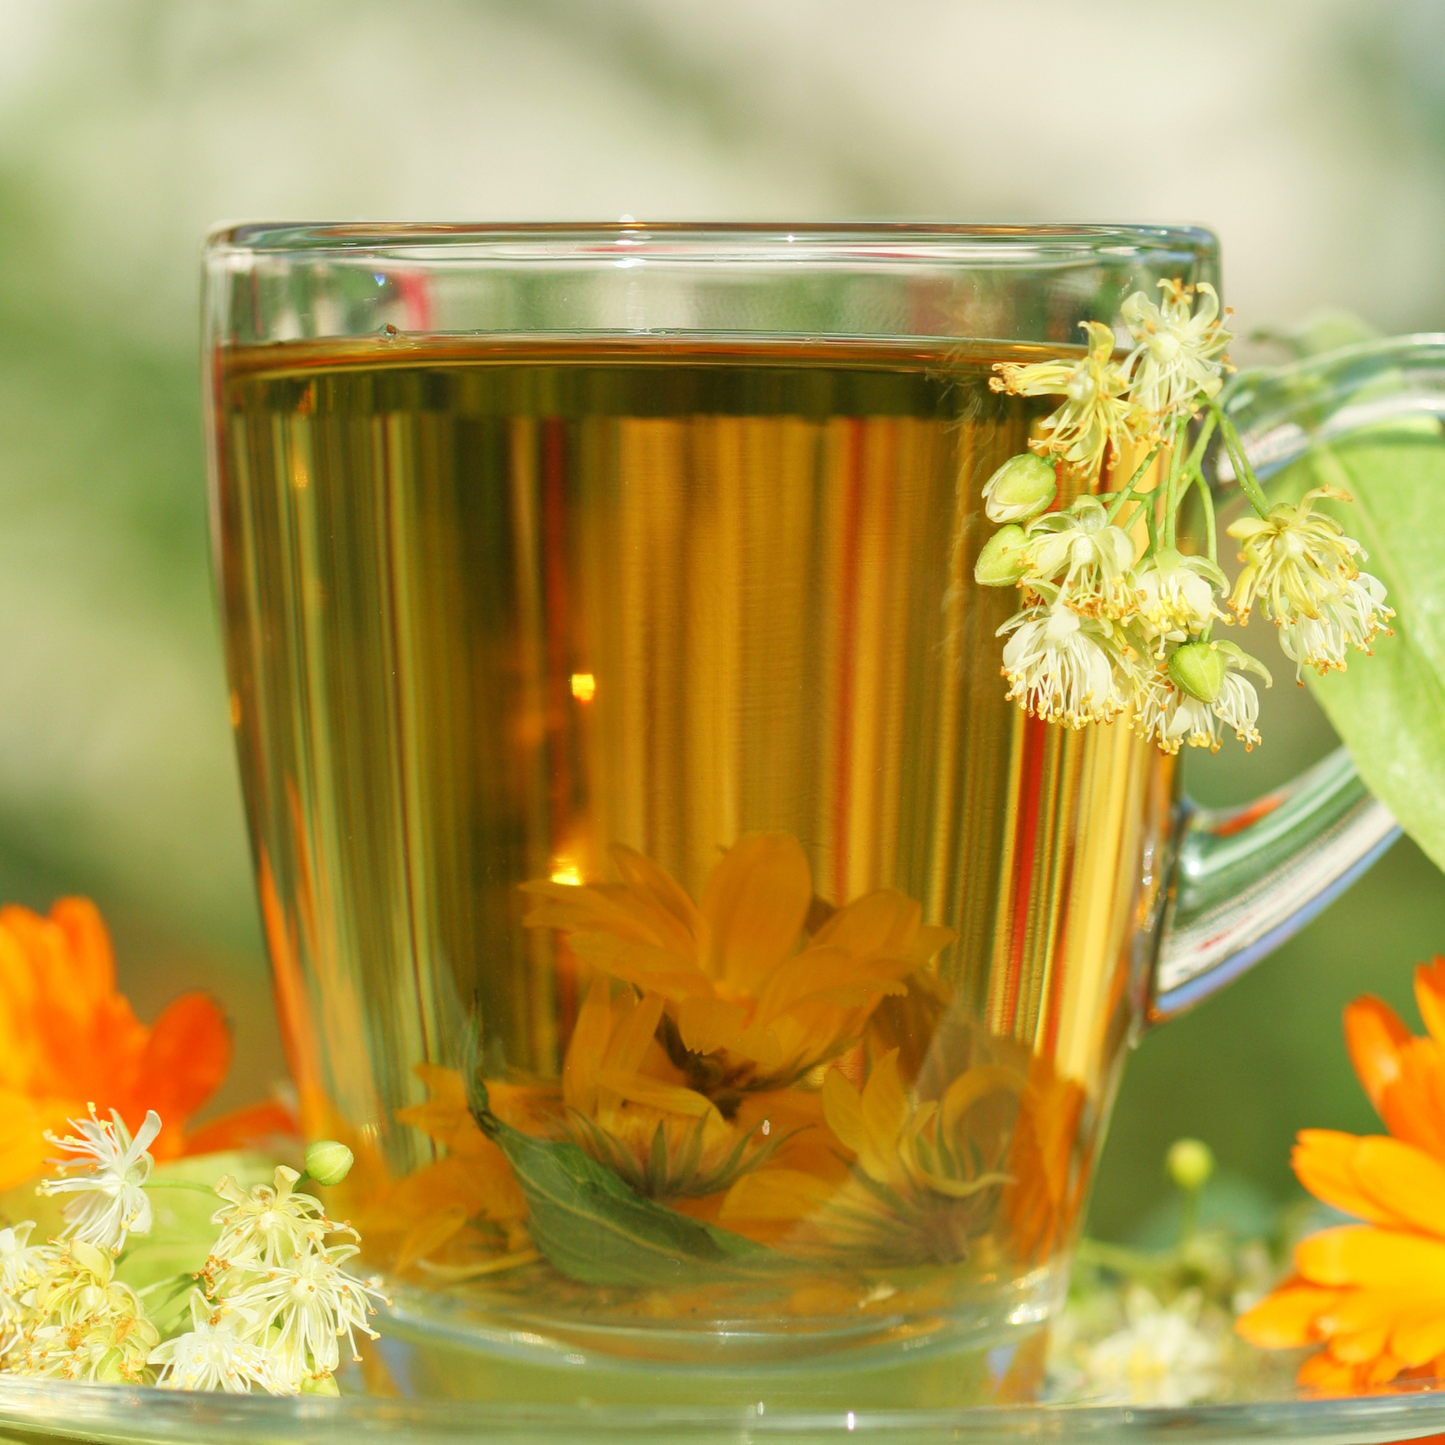 Marigold Flower Petals, Herbal Tea, Loose Leaf Tea, Flowers Whole